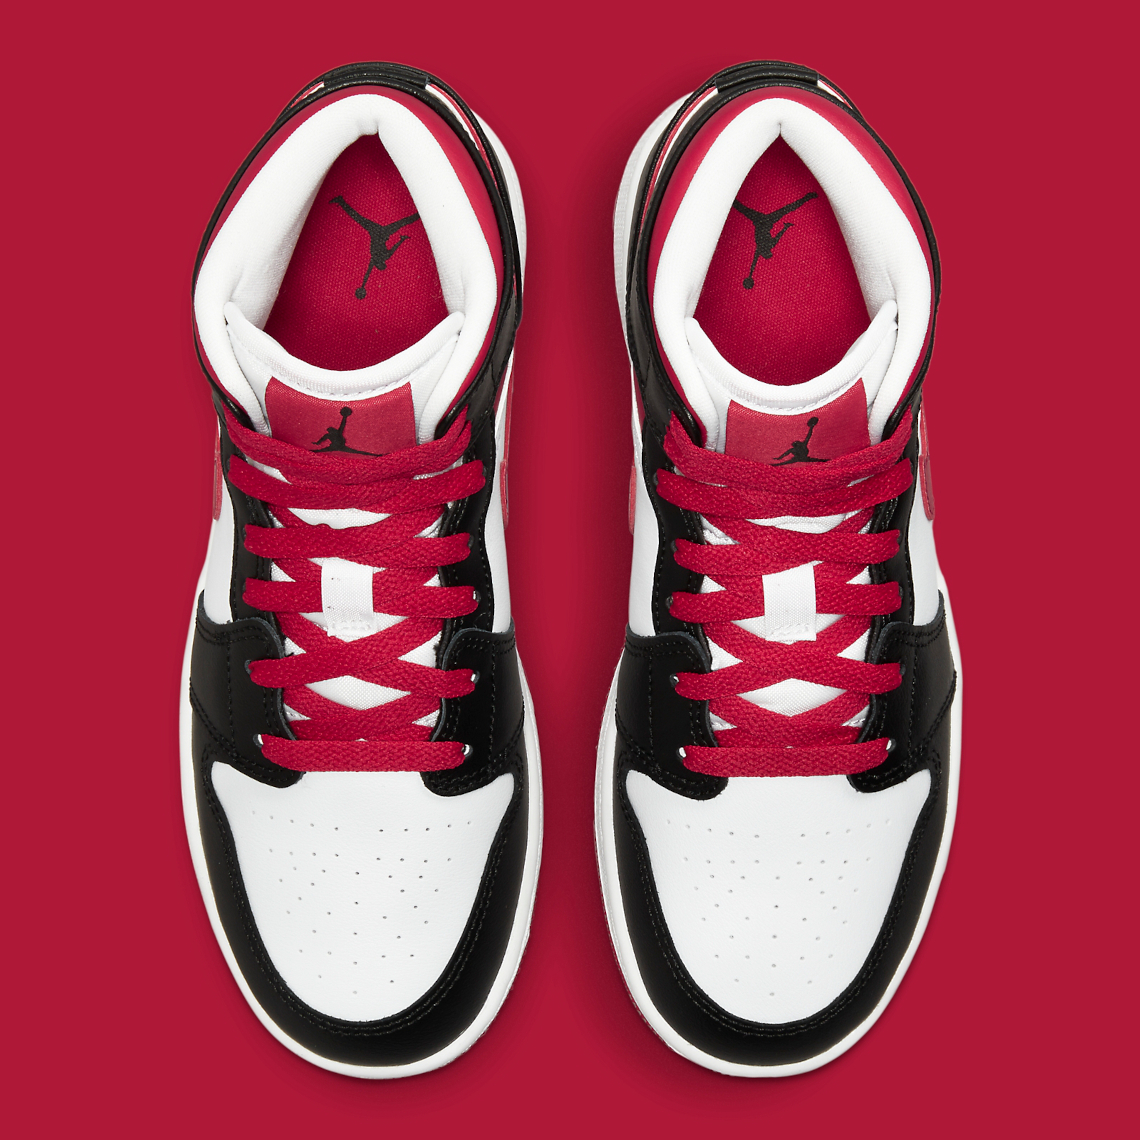 Air red white black jordans Jordan 1 Mid GS Black Red White 554725-016 | SneakerNews.com